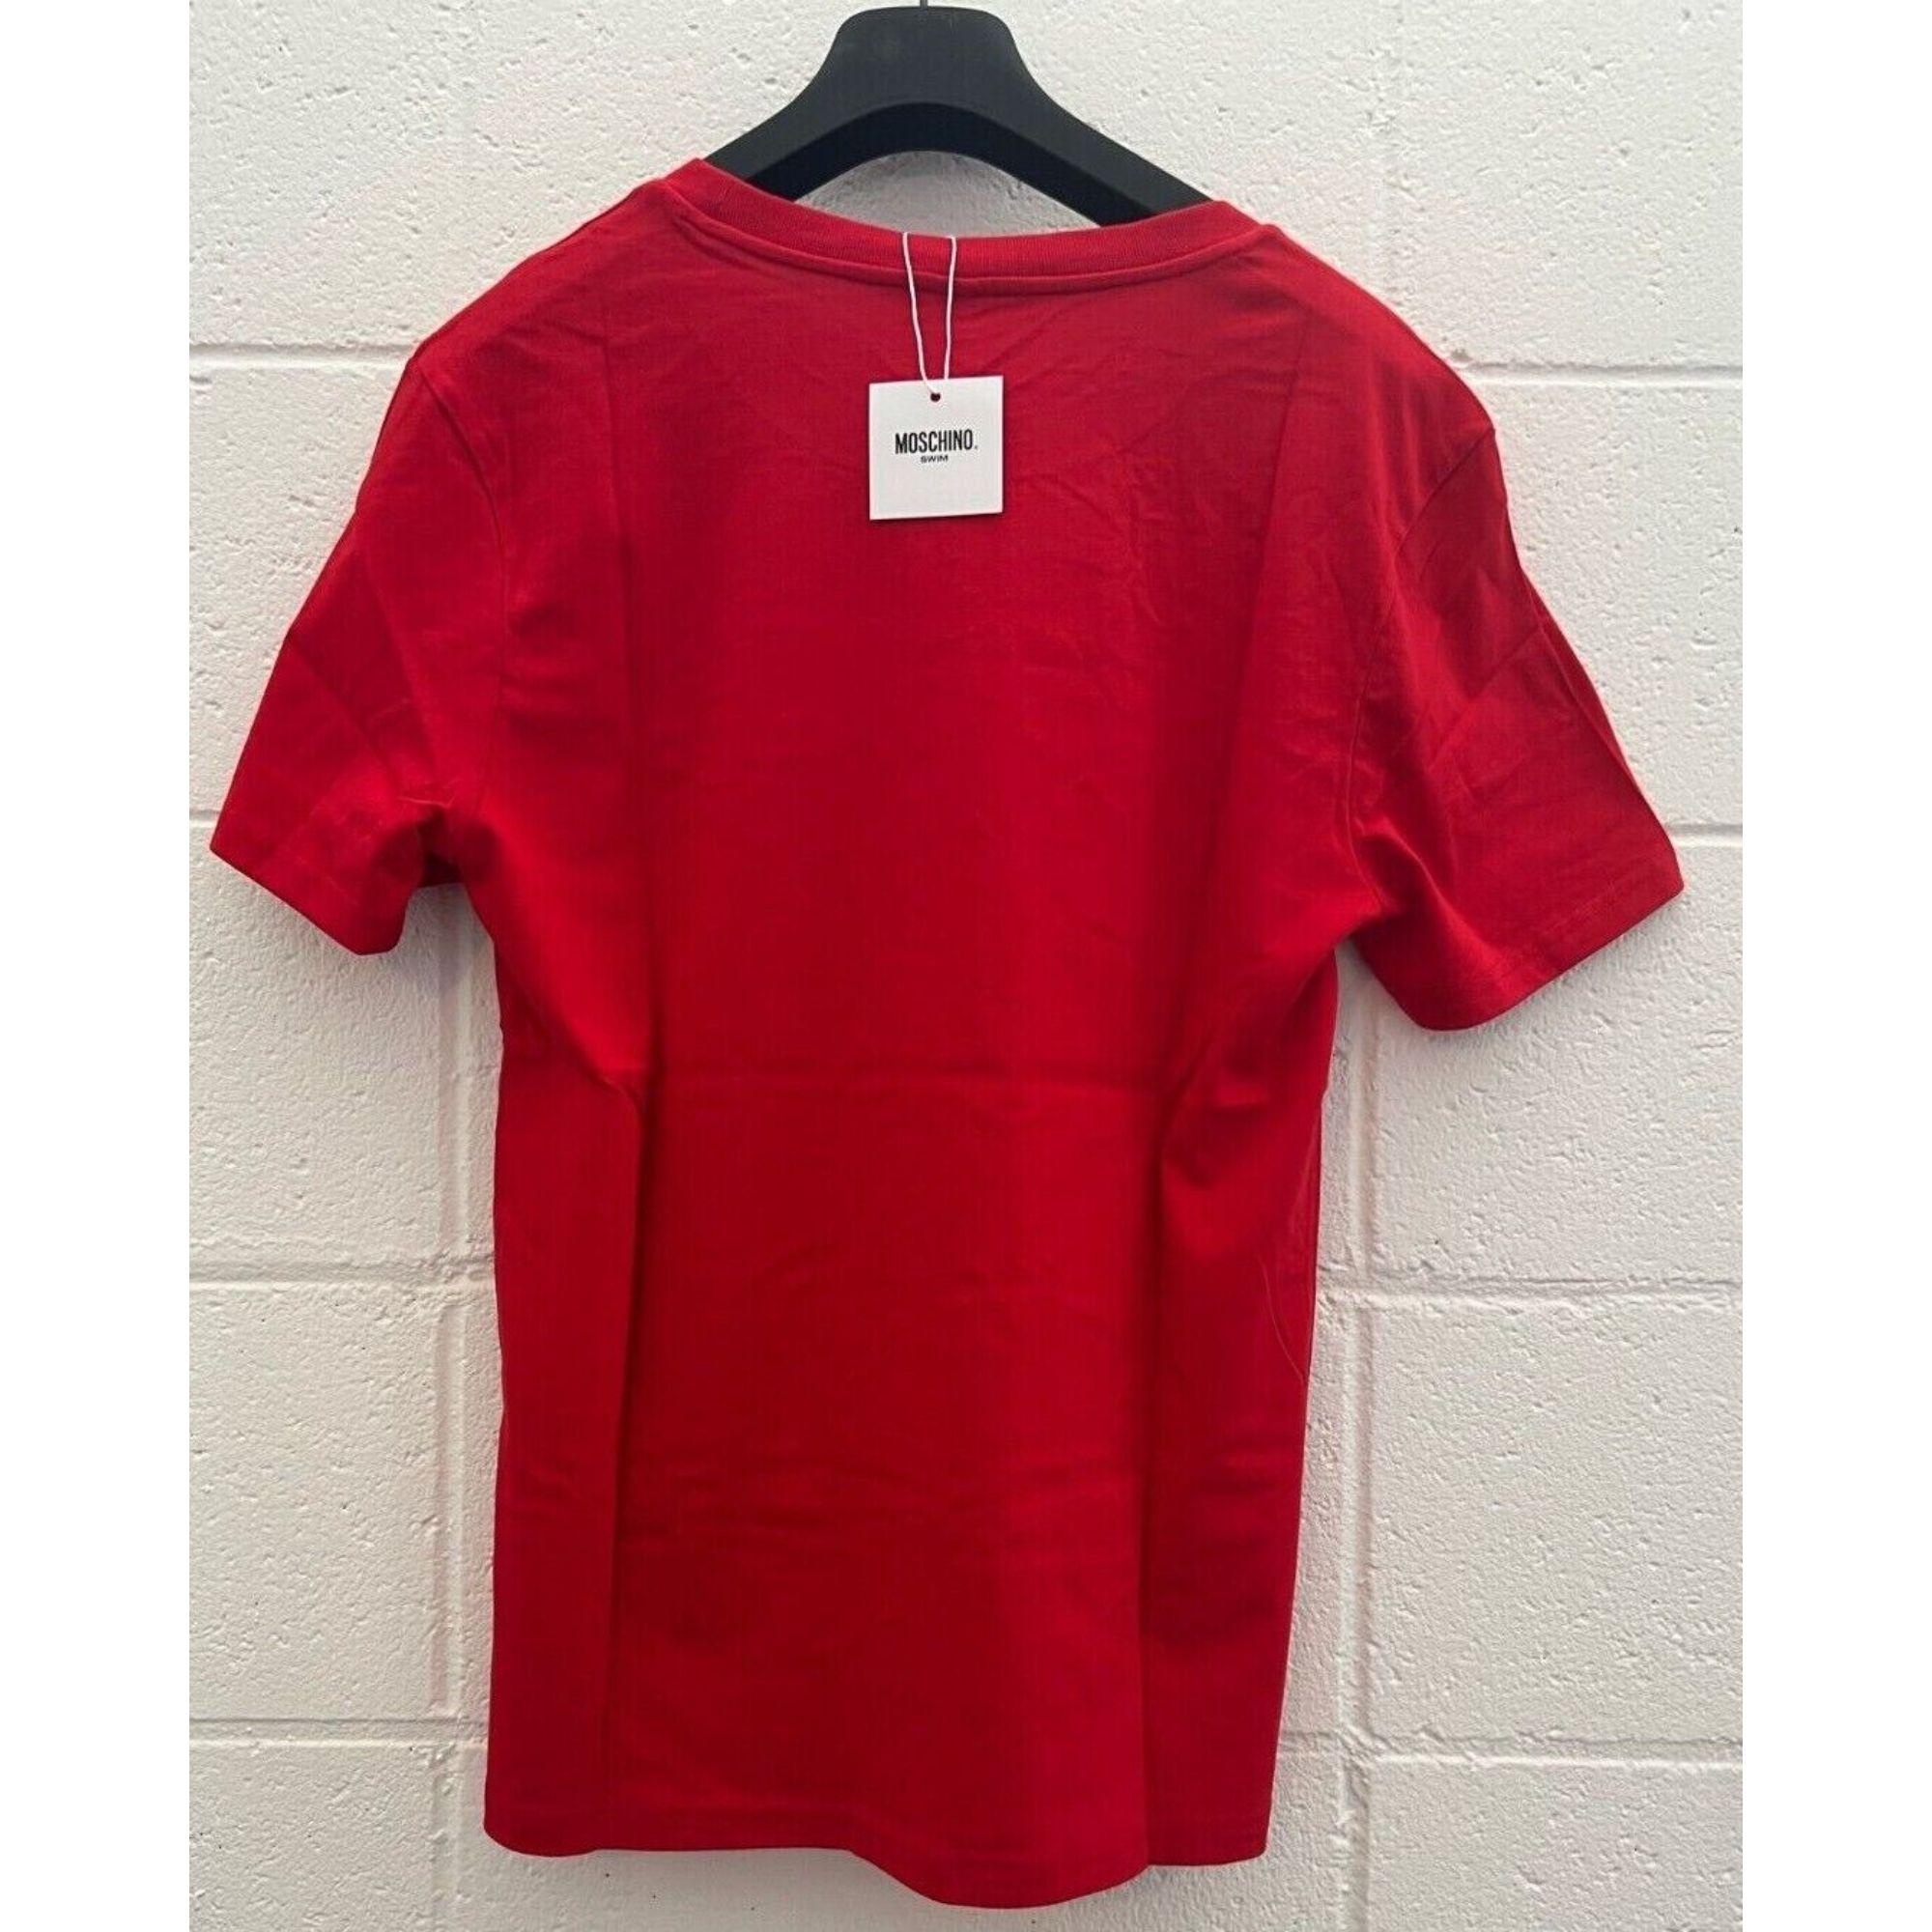 Aw20 Moschino Swim Jeremy Scott Rotes T-Shirt mit mehrfarbigem 3D-Logo

Zusätzliche Informationen:
MATERIAL: 100% Baumwolle
Farbe: Rot
Größe: L / US M
Muster: Einfarbig, Logo
Abmessungen: Schulter zu Schulter 17